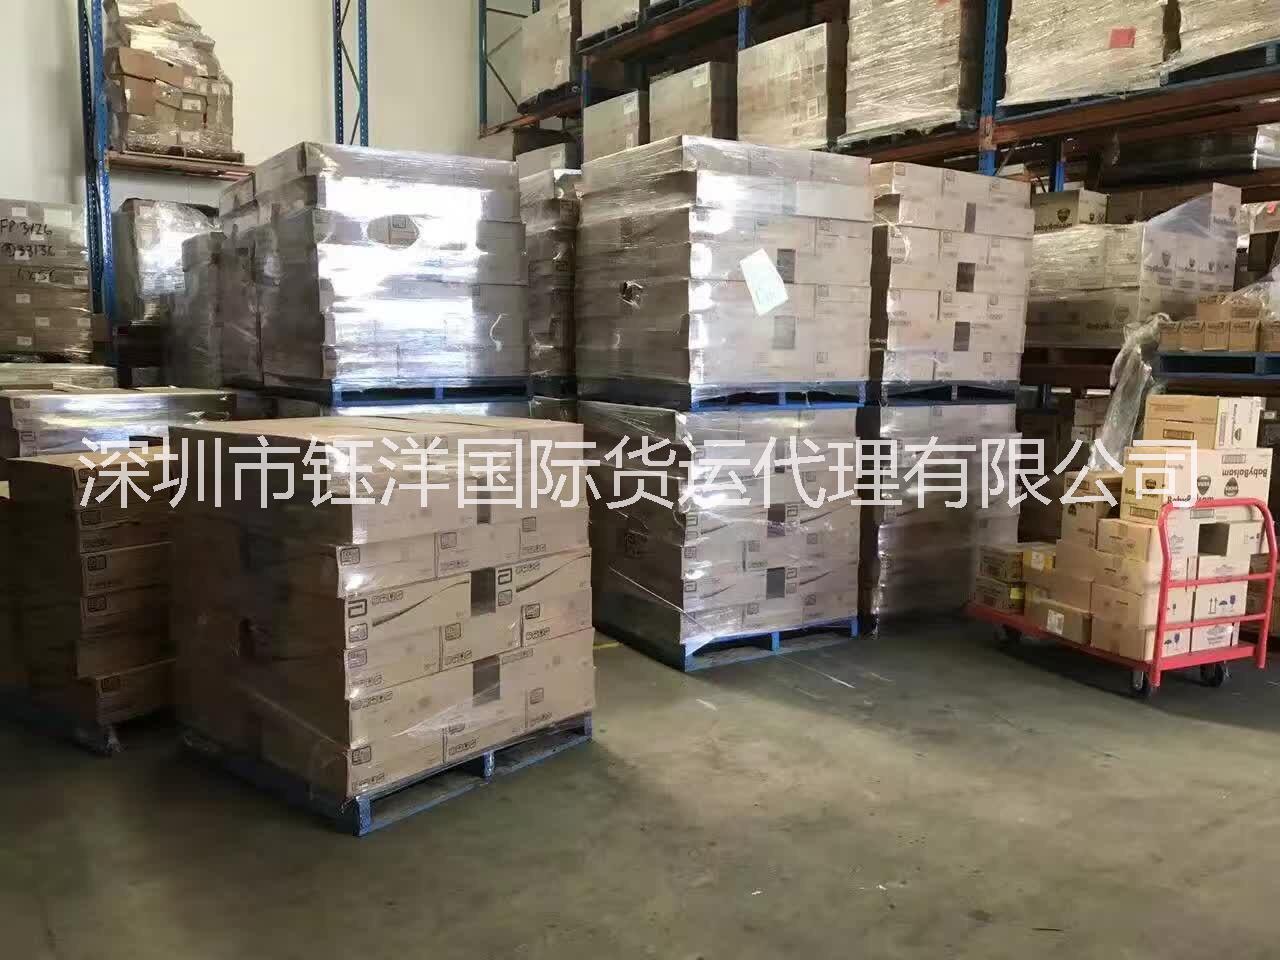 马来西亚货物包税进口到中国 马来西亚货物包税进口到中国大陆图片